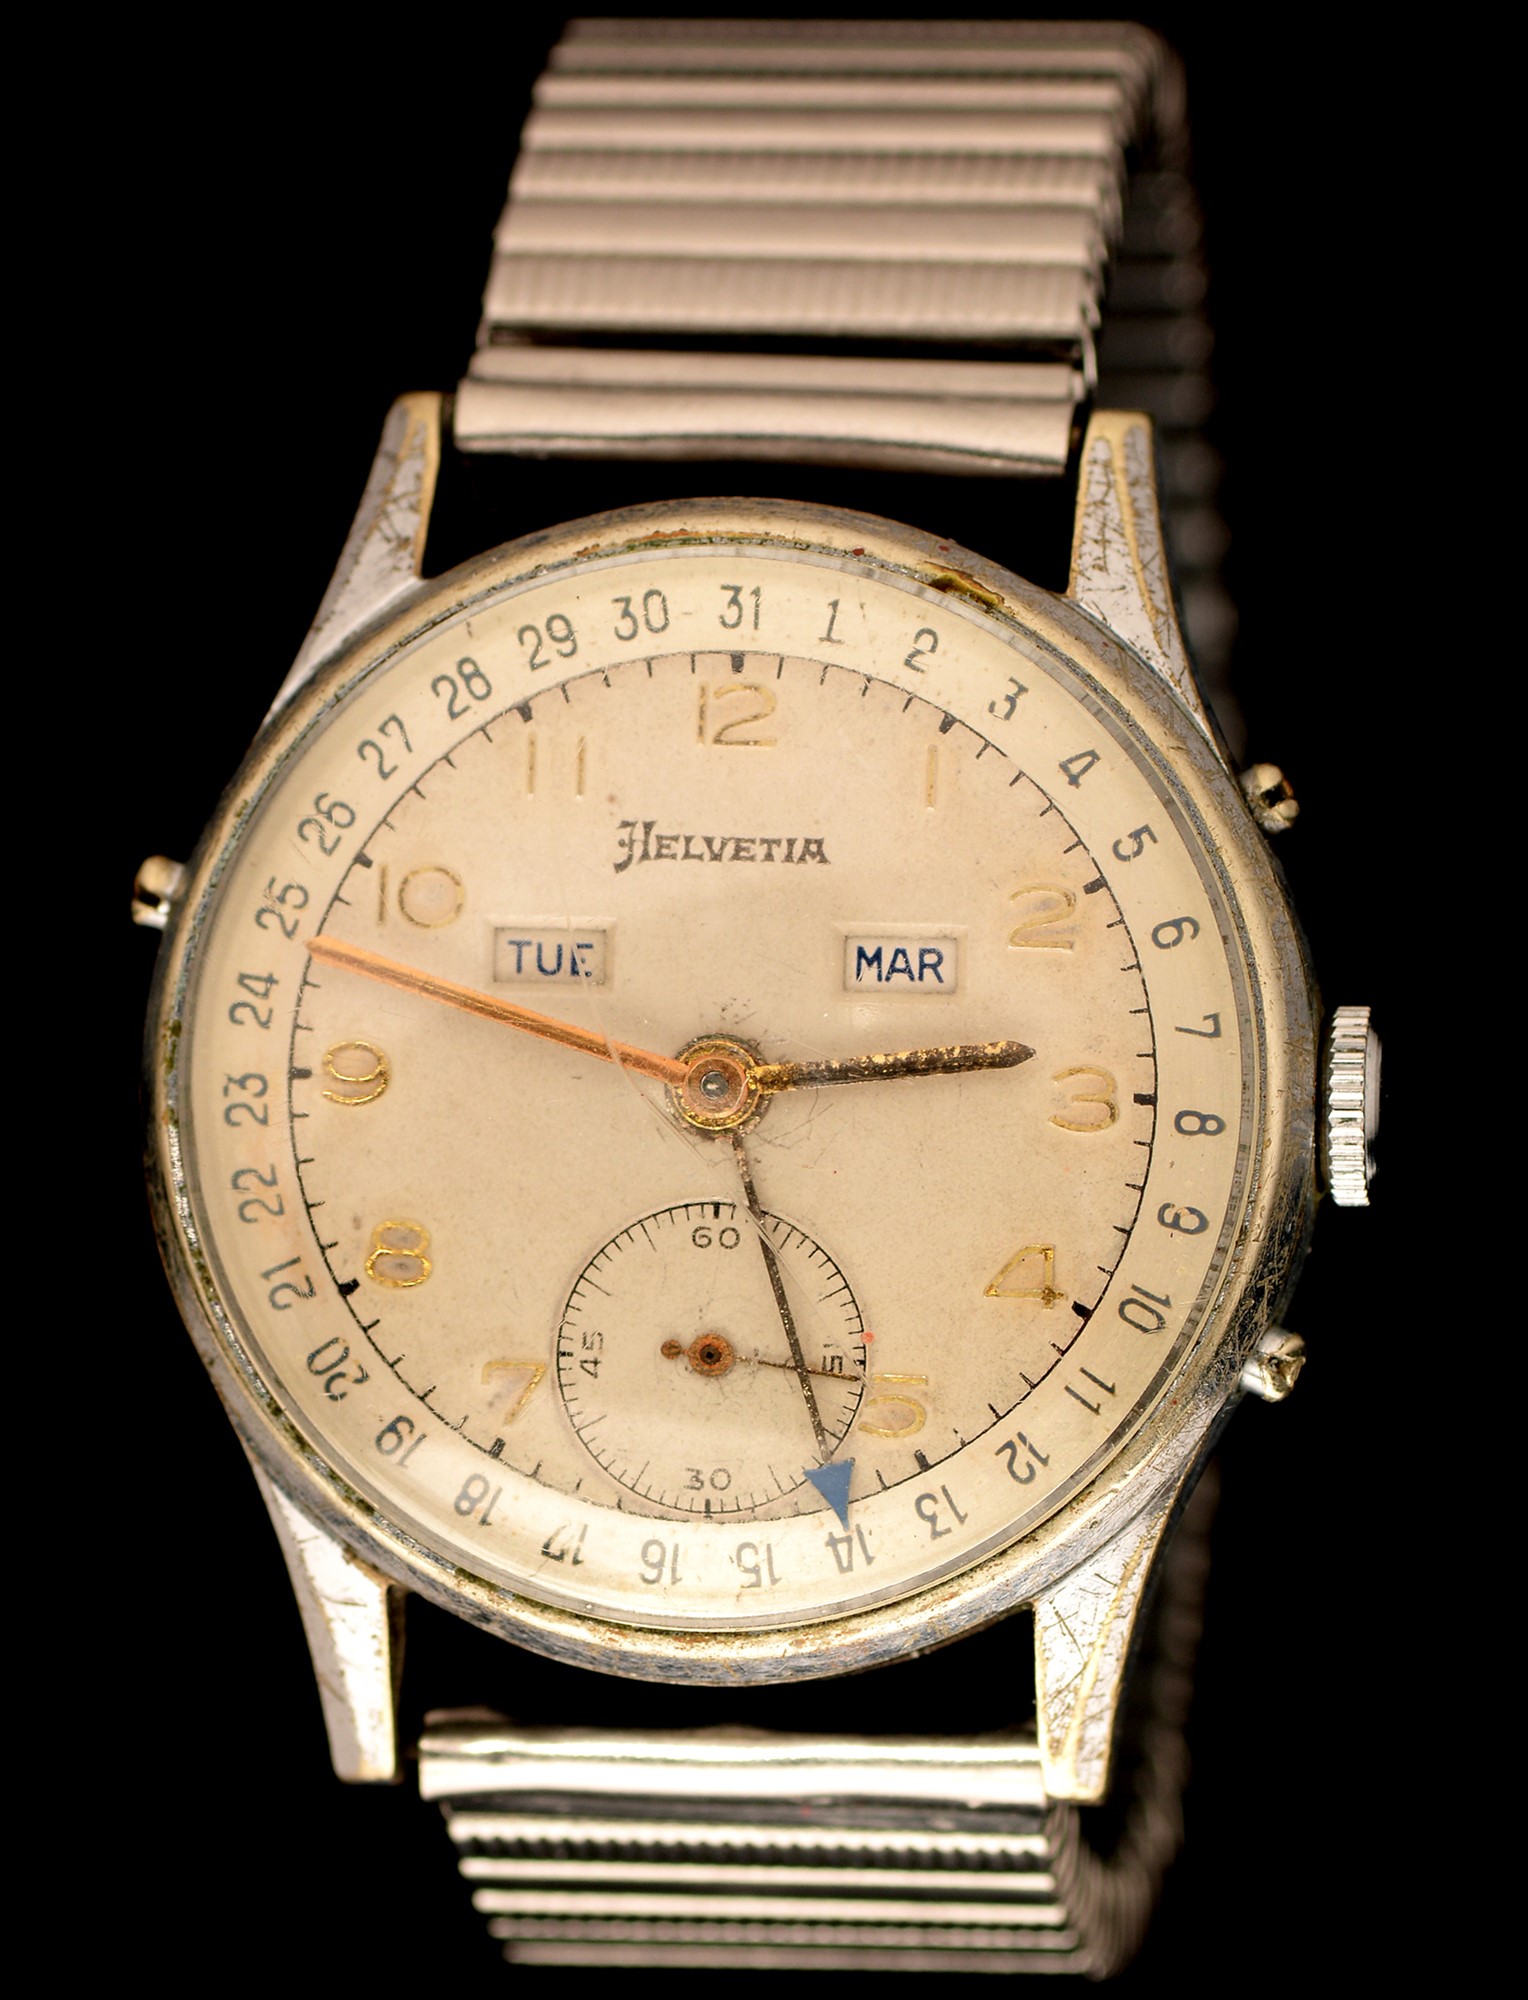 Helvetia Calendar wristwatch